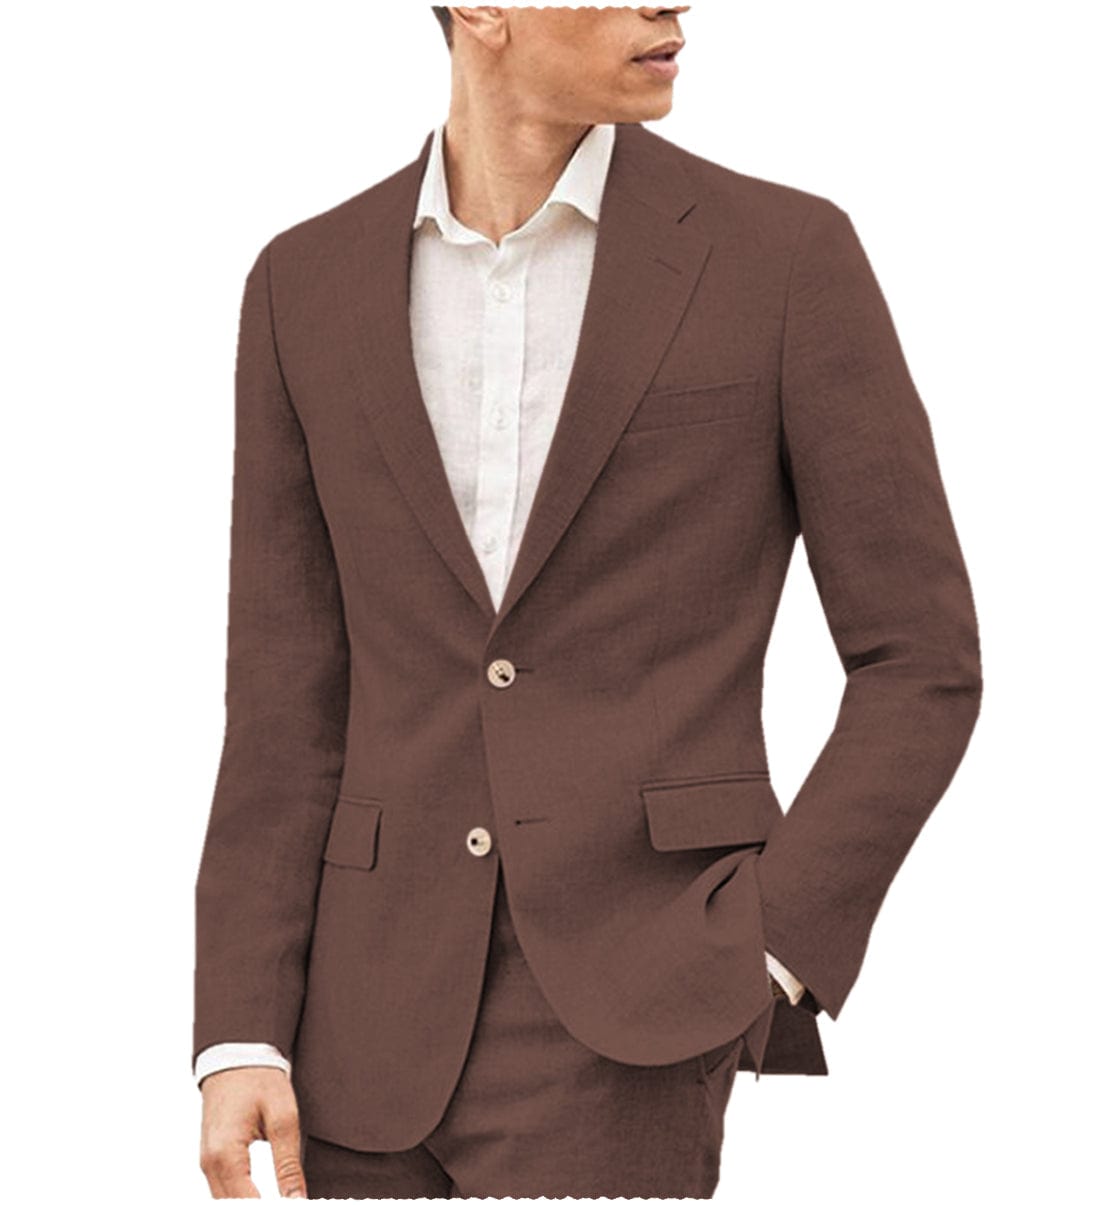 aesido Men's Suit 2 Pieces Double Button Notch Lapel Jacket（Blazer+Pants）